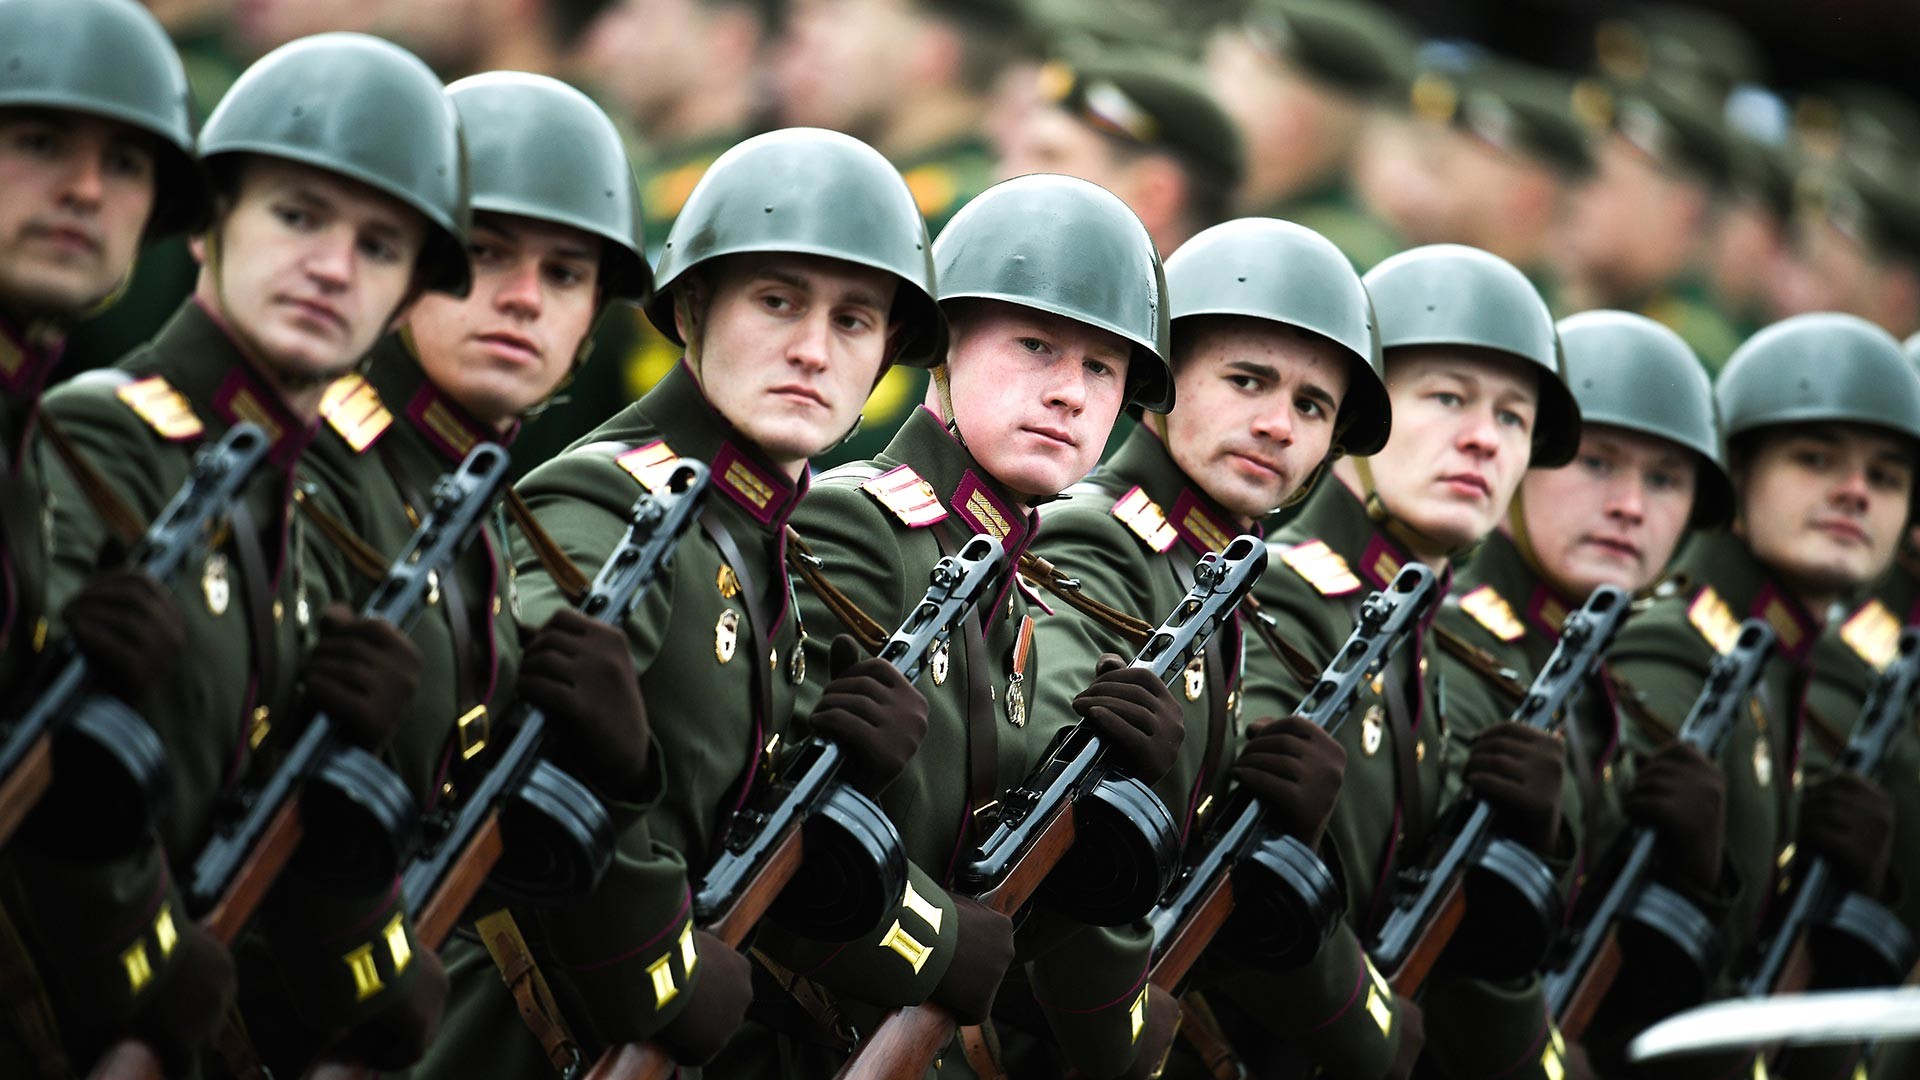 Des militaires russes traversant la place Rouge en portant des uniformes soviétiques de la Seconde Guerre mondiale et des mitraillettes PPSh.